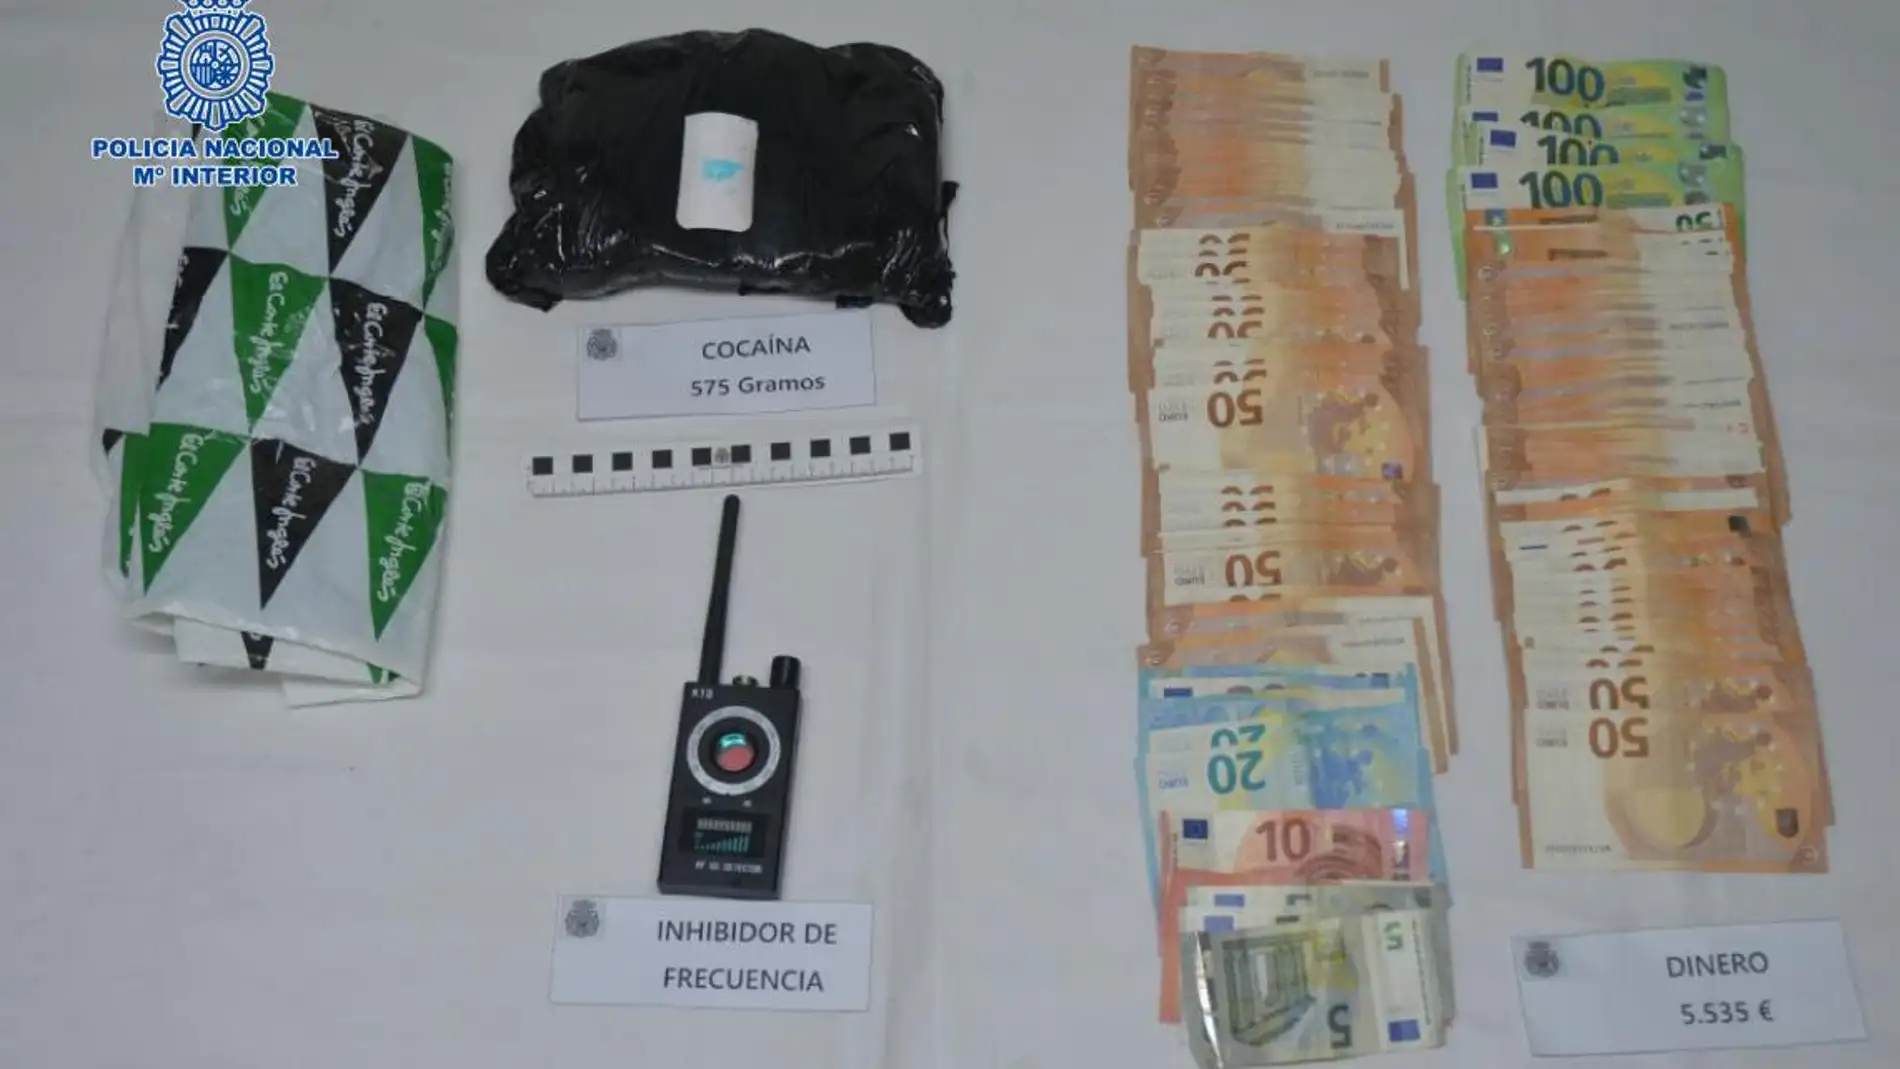 Objetos y material intervenidos por la Policía Nacional de Ciudad Real